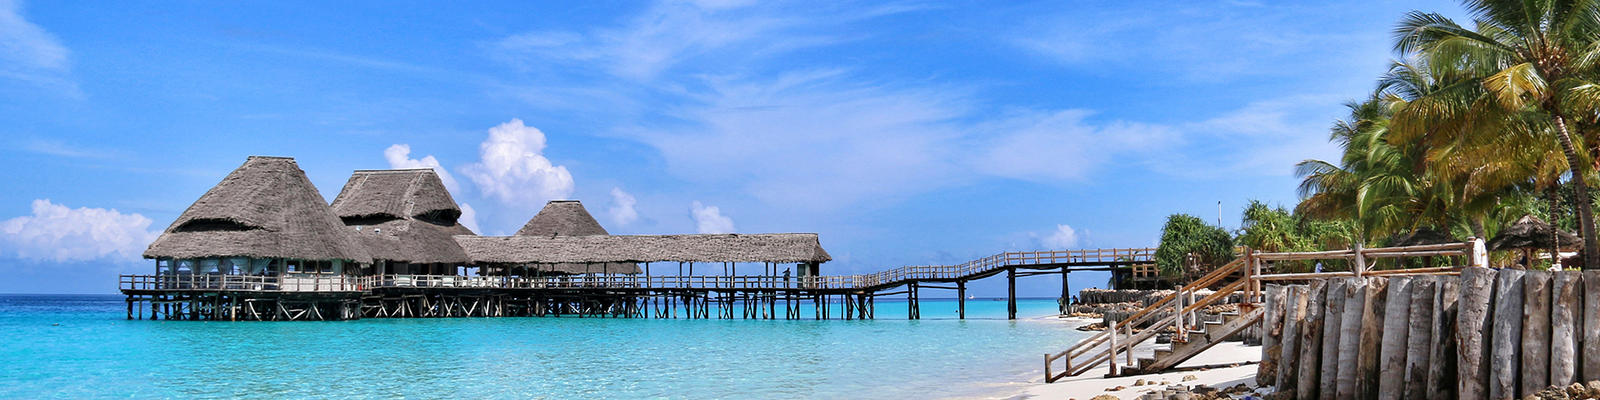 Zanzibar is a dream travel destination in 2022